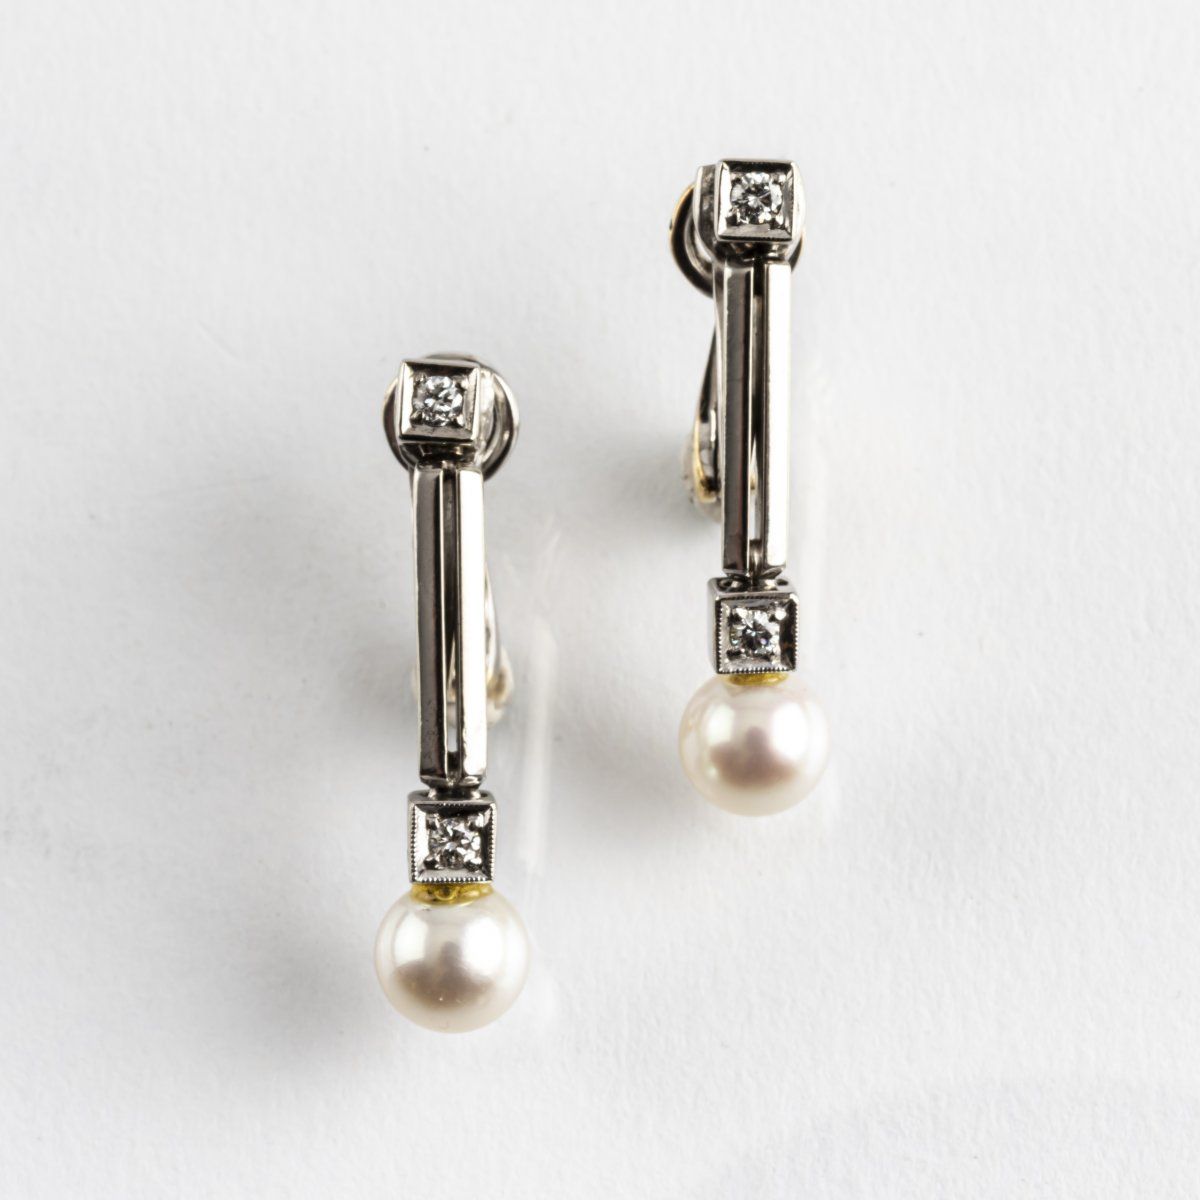 Null Mecan Elde, France, Pair of clip earrings, 1990s, 585 white gold, diamonds,&hellip;